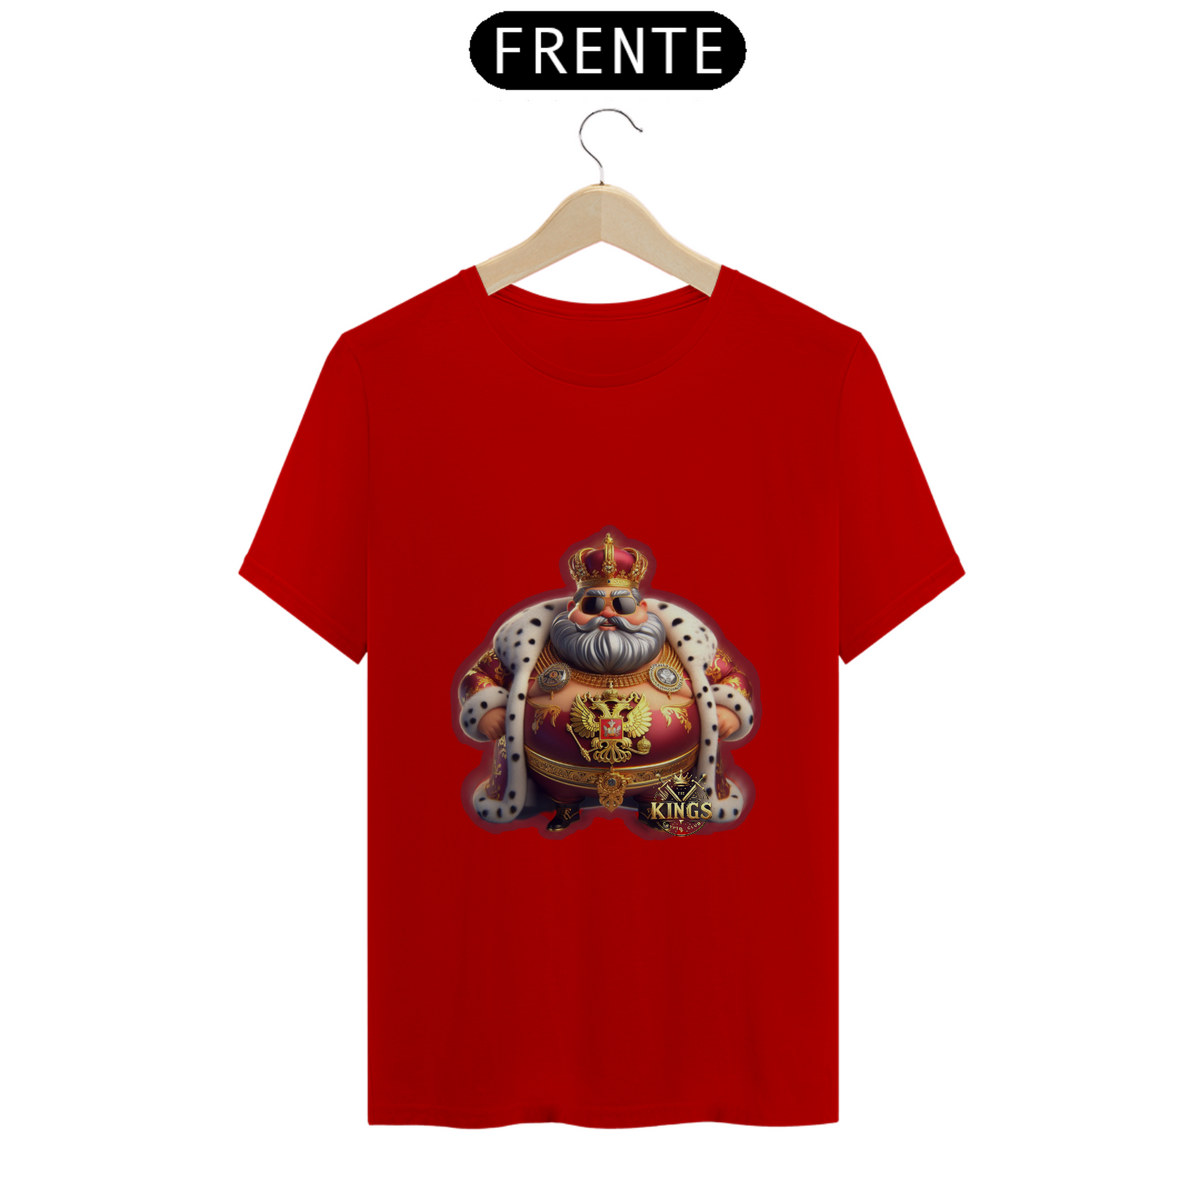 Nome do produto: T-shirt The Kings 